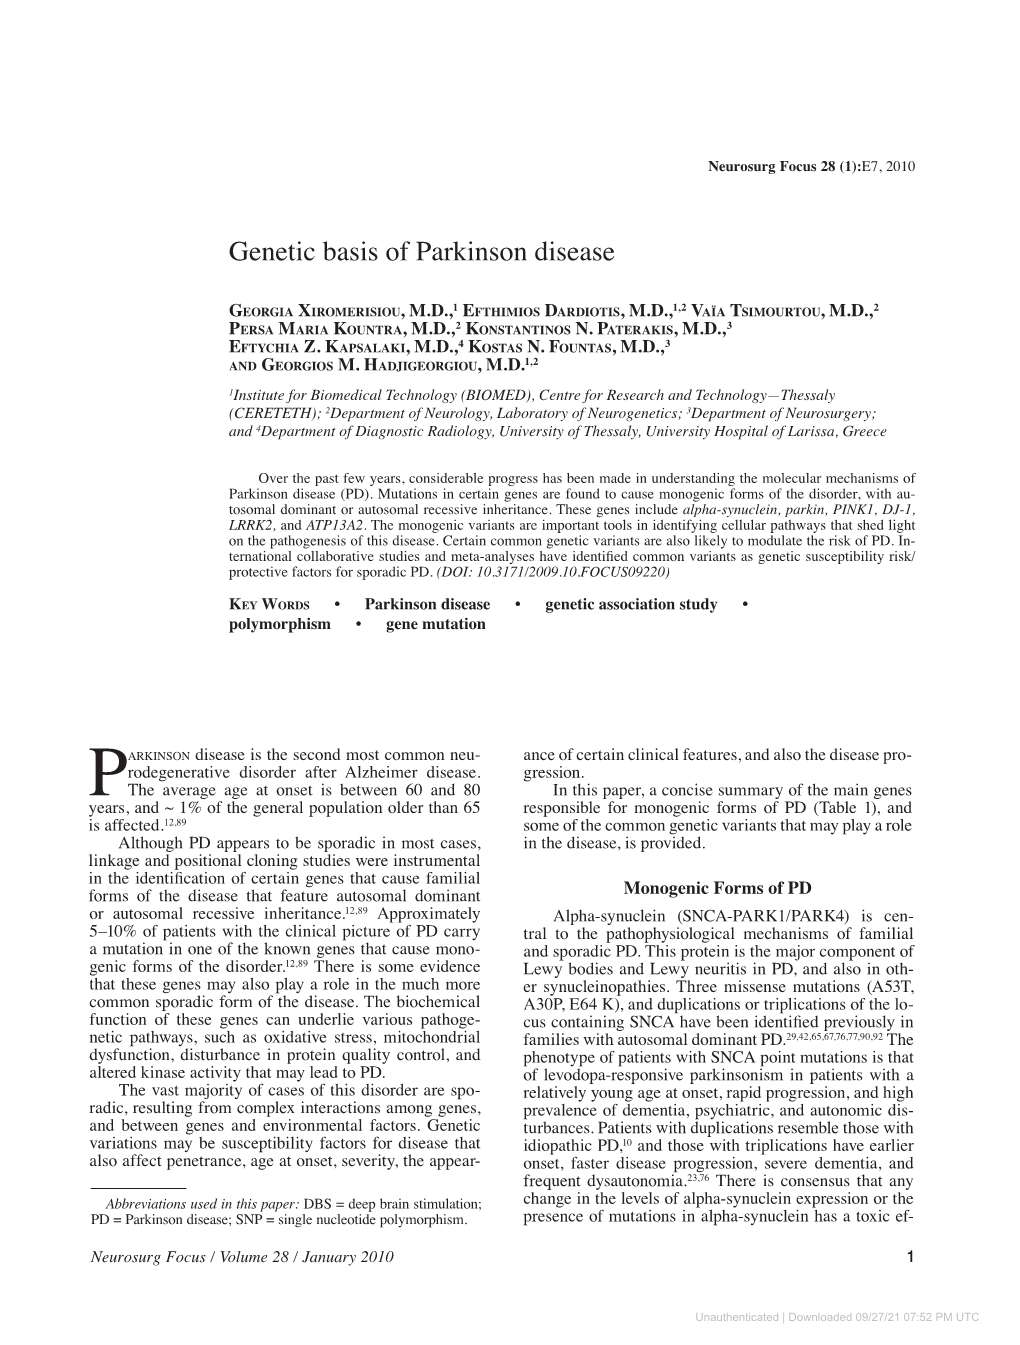 Genetic Basis of Parkinson Disease